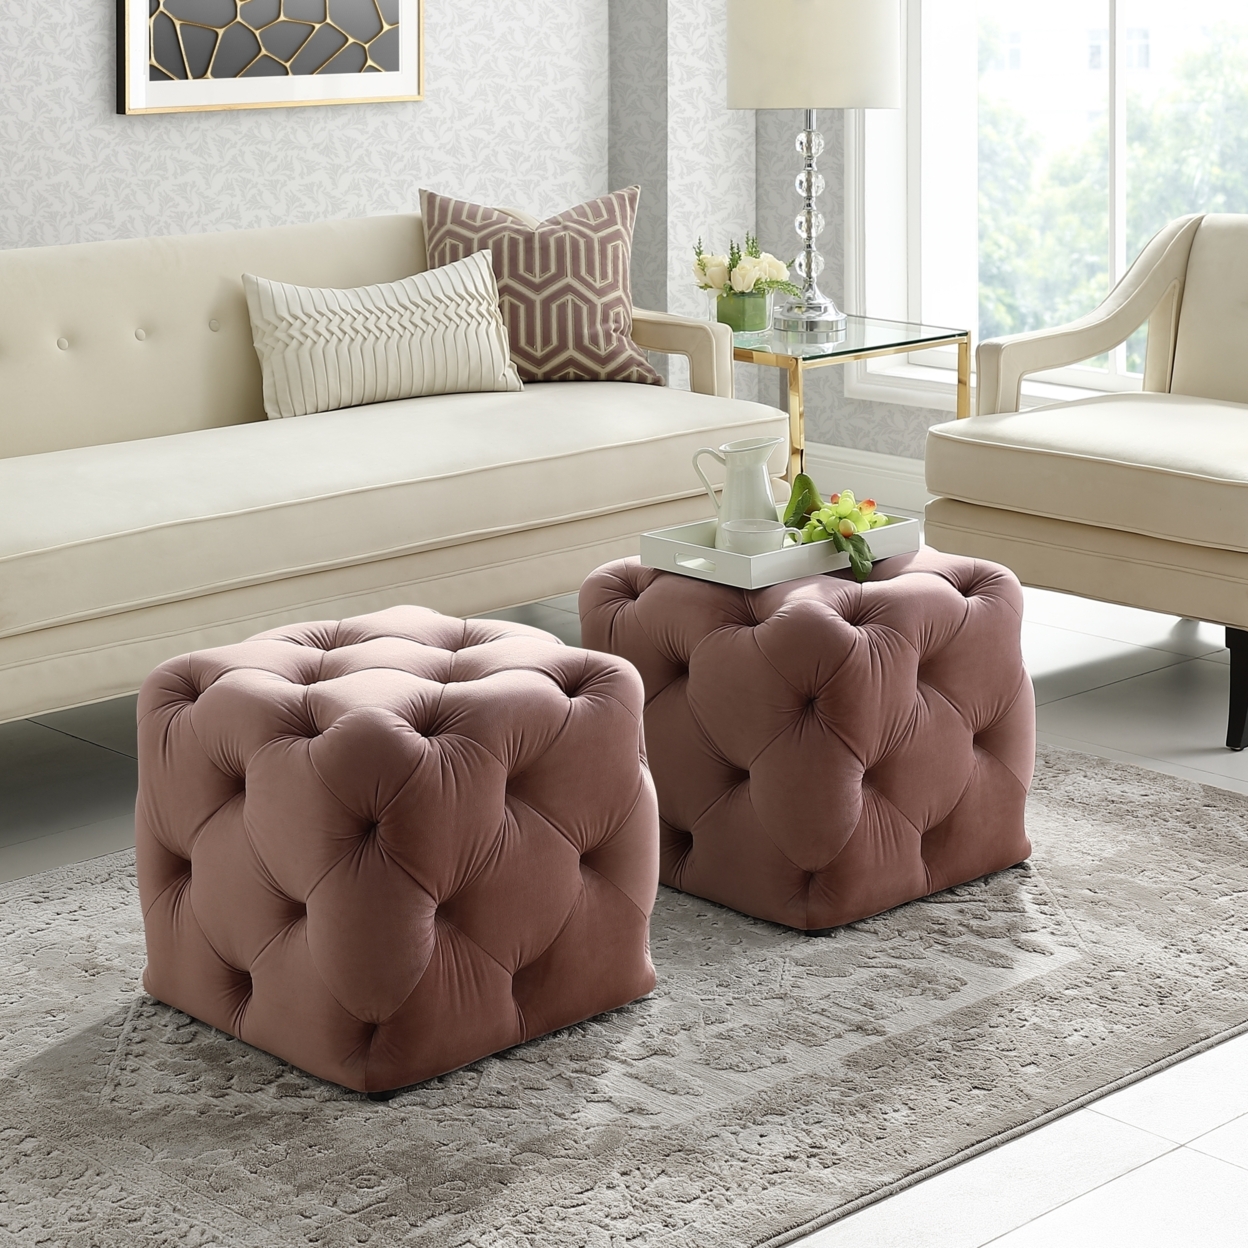 Harmony Velvet Or Linen Ottoman-Square Shaped-Allover Tufted Design-Modern & Functional By Inspired Home - Beige Linen